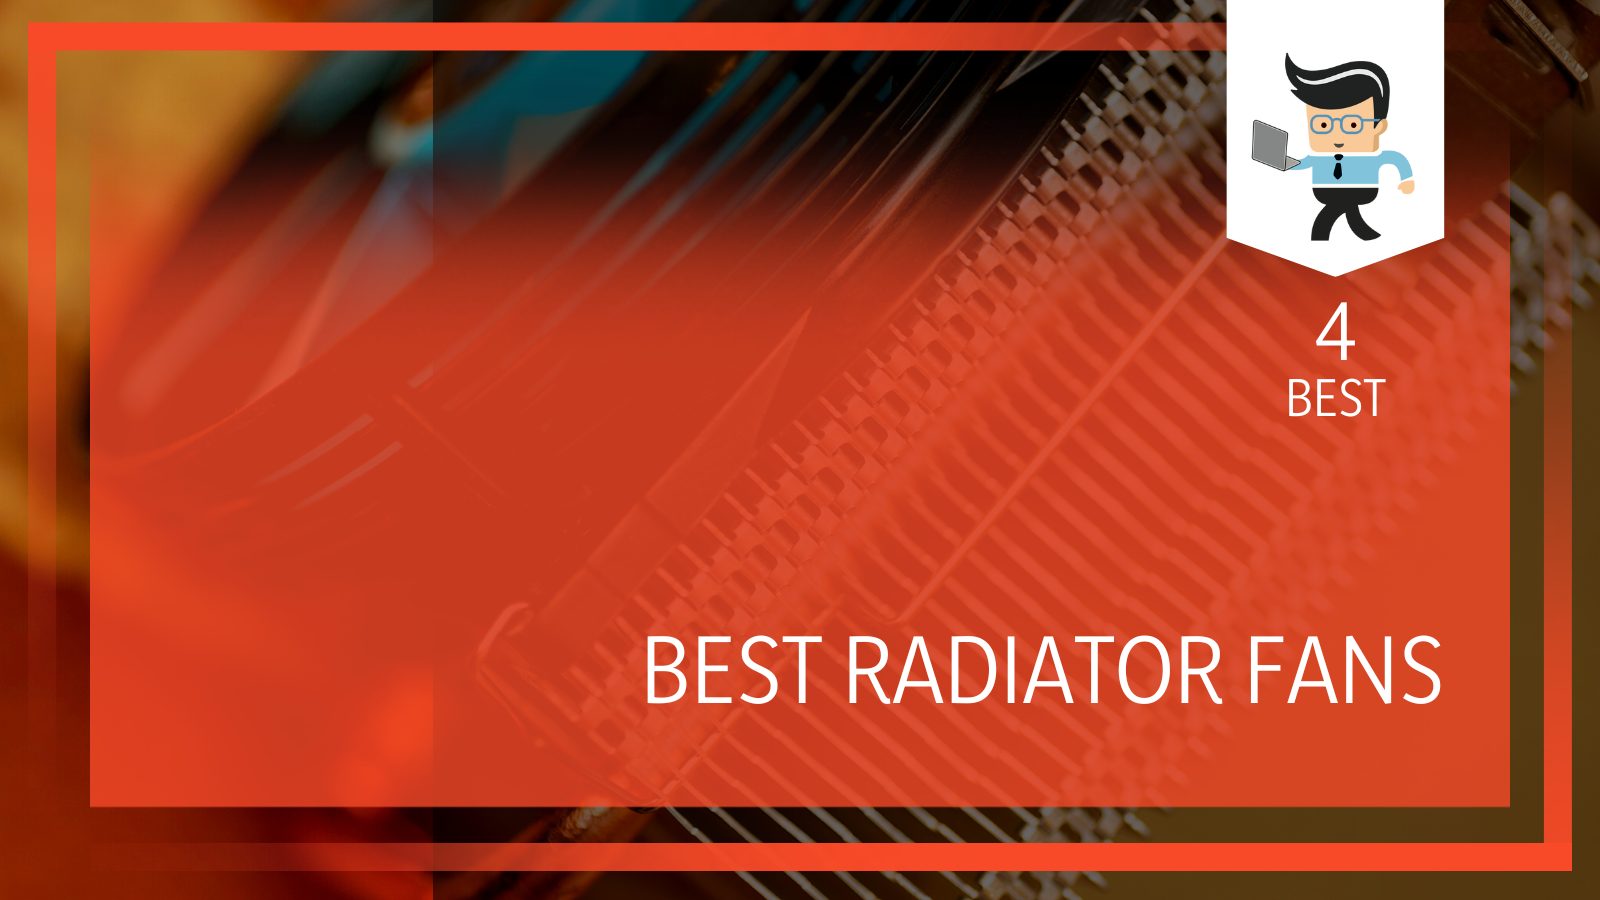 Radiator CPU Fans Rating